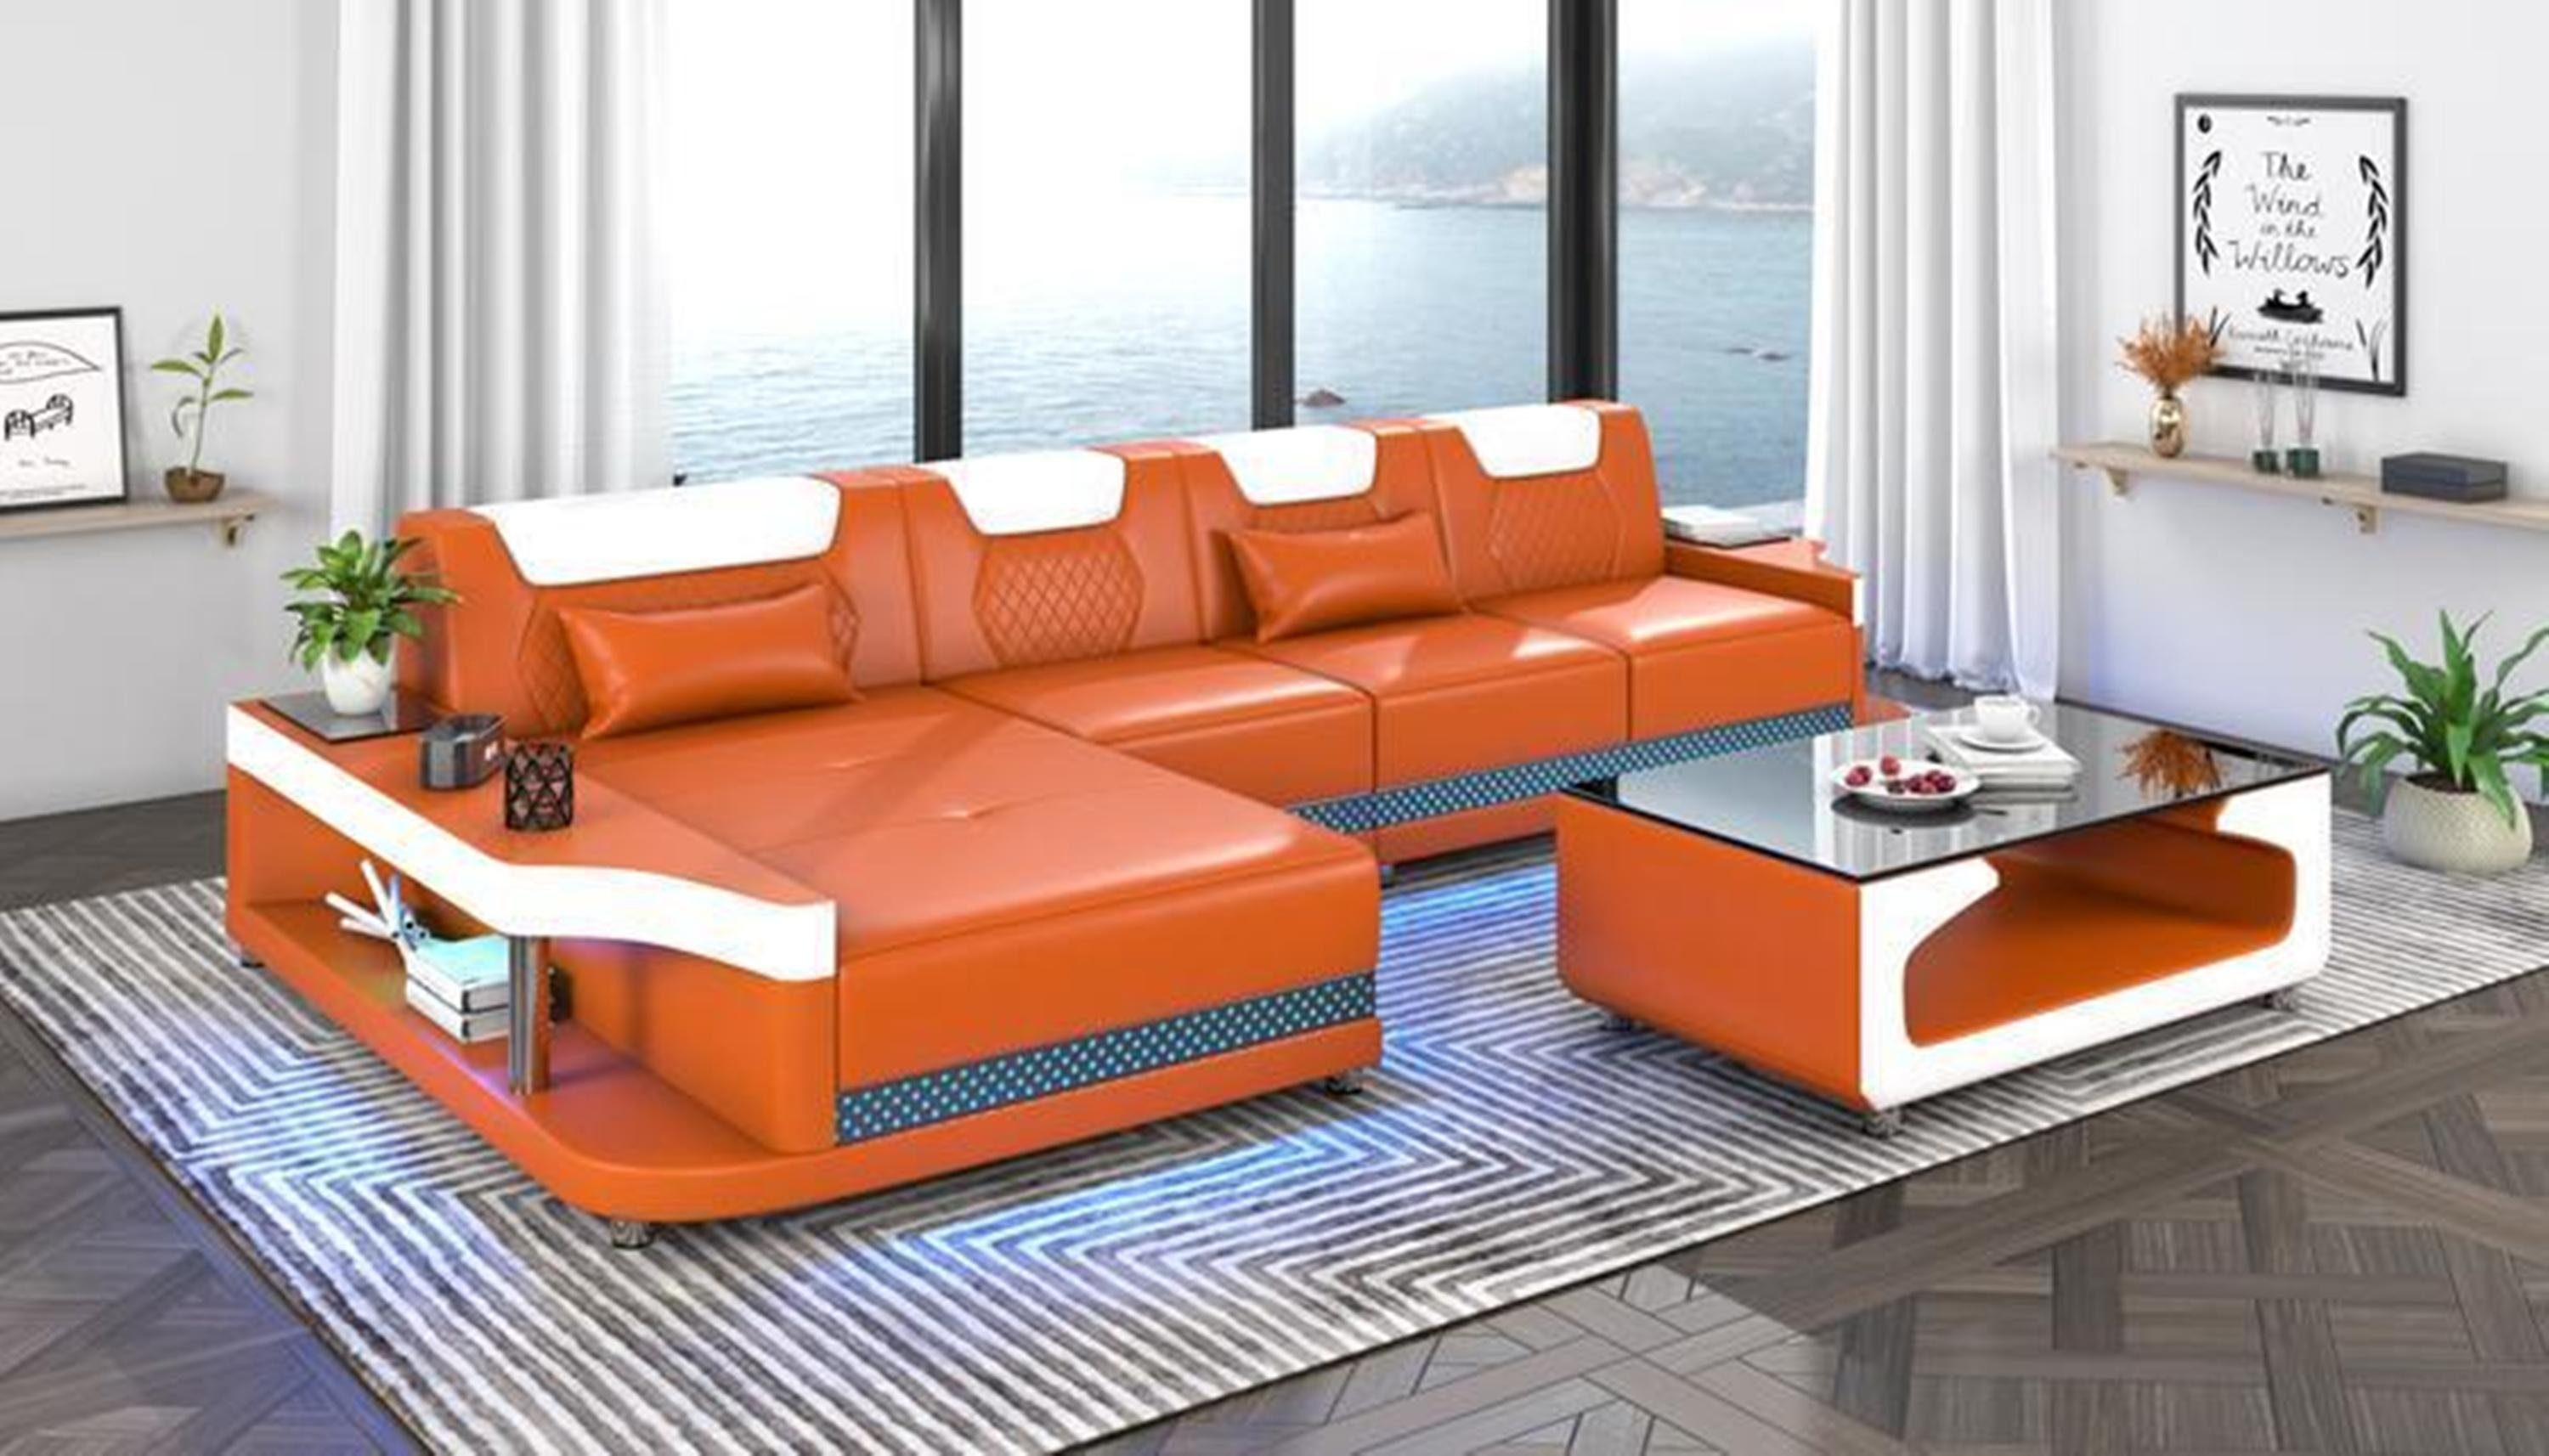 JVmoebel Ecksofa, Ecksofa Couchtisch + Form L Sofa Eckcouch Orange Wohnzimmer Design Möbel